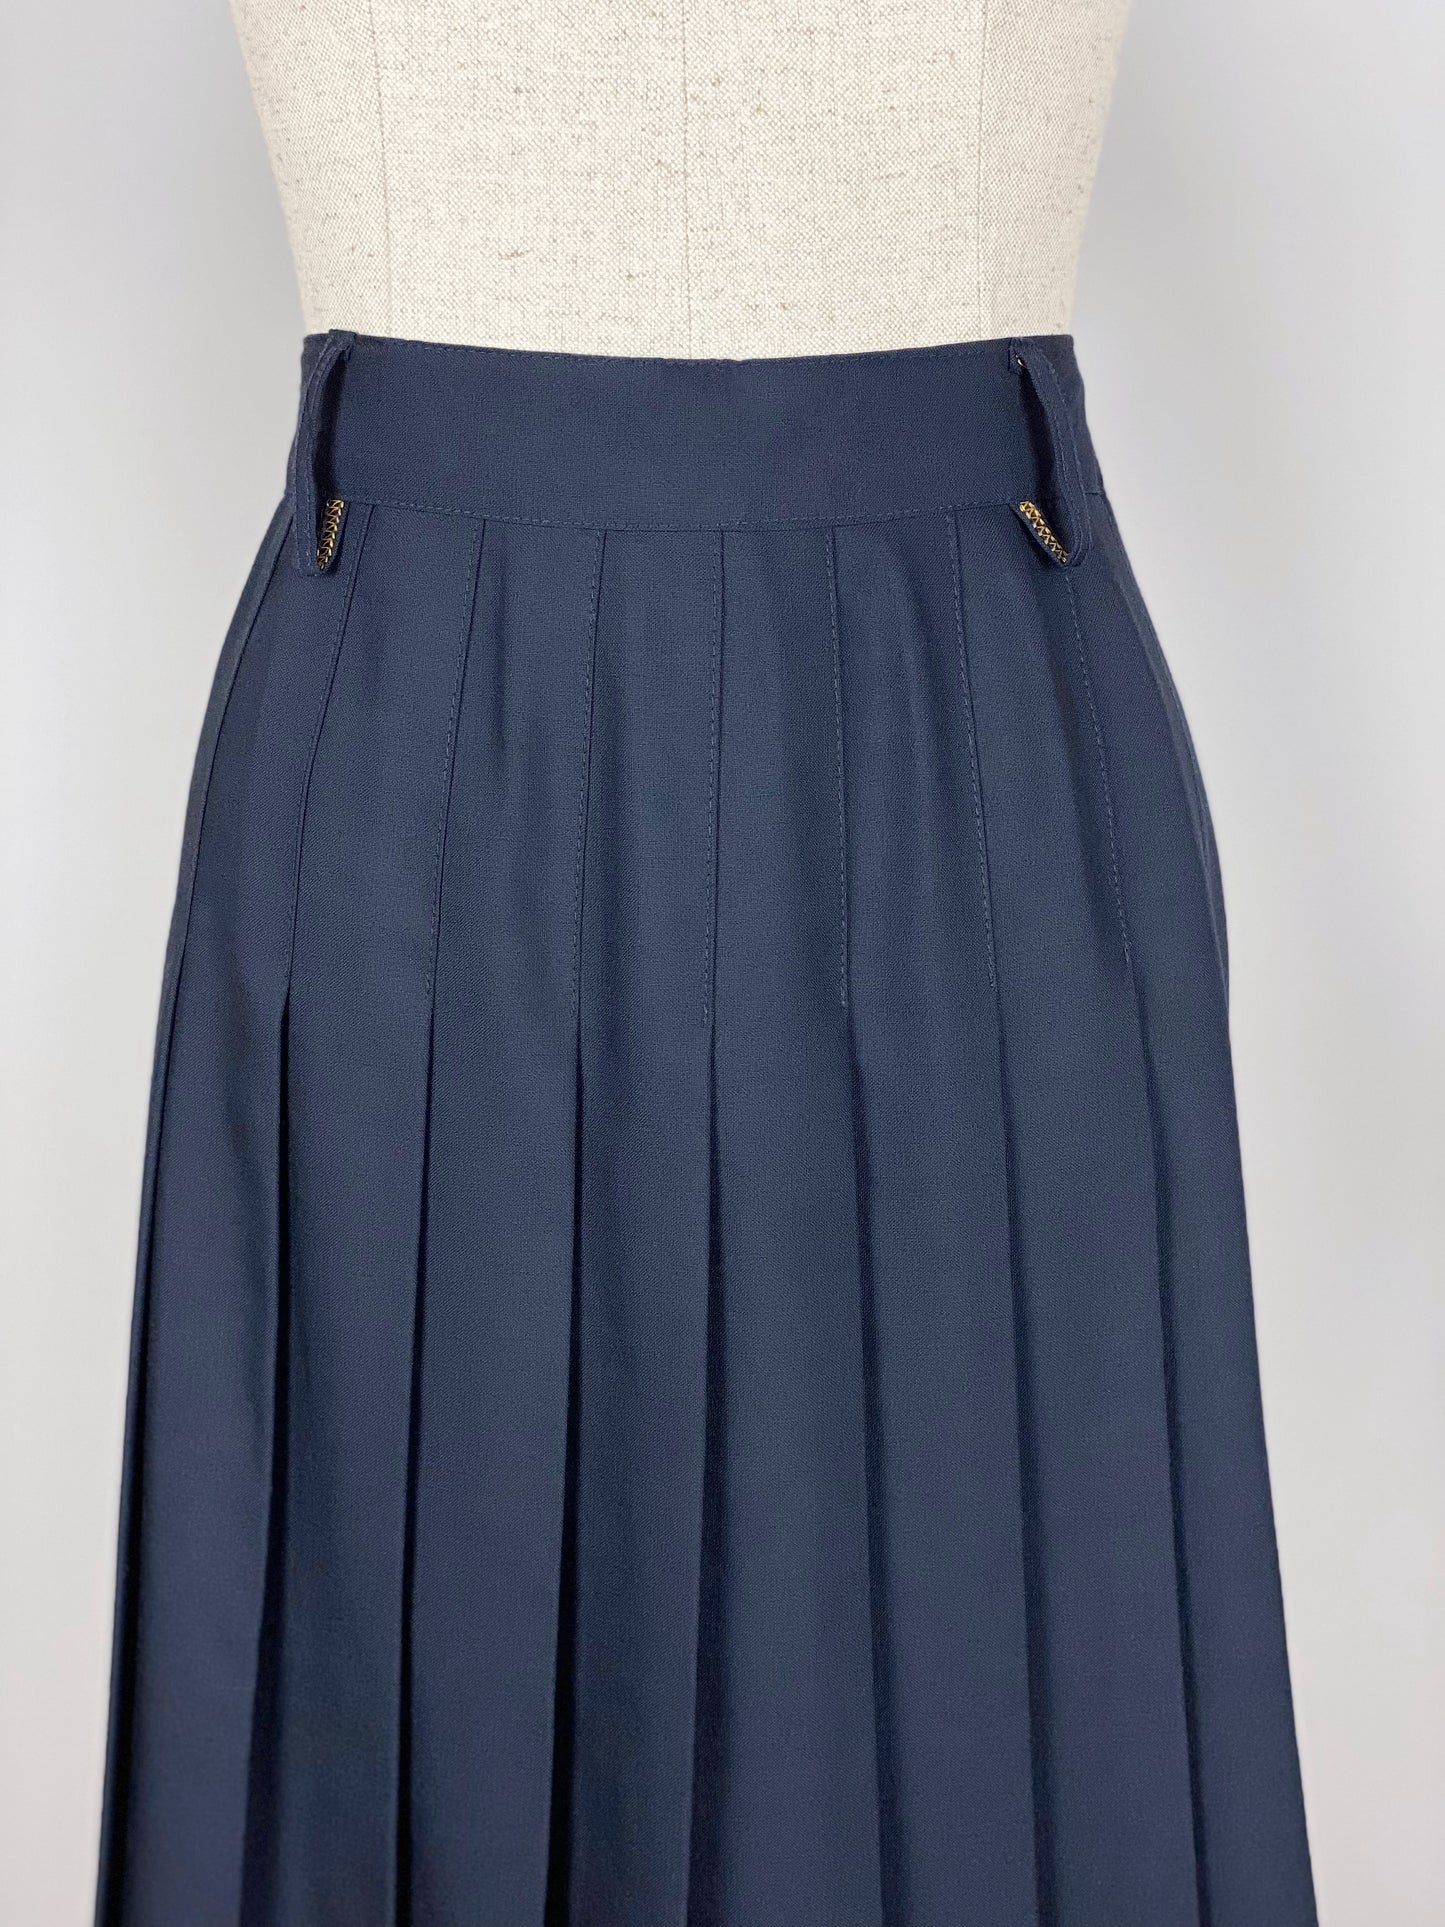 Vintage Blue Pleated Skirt